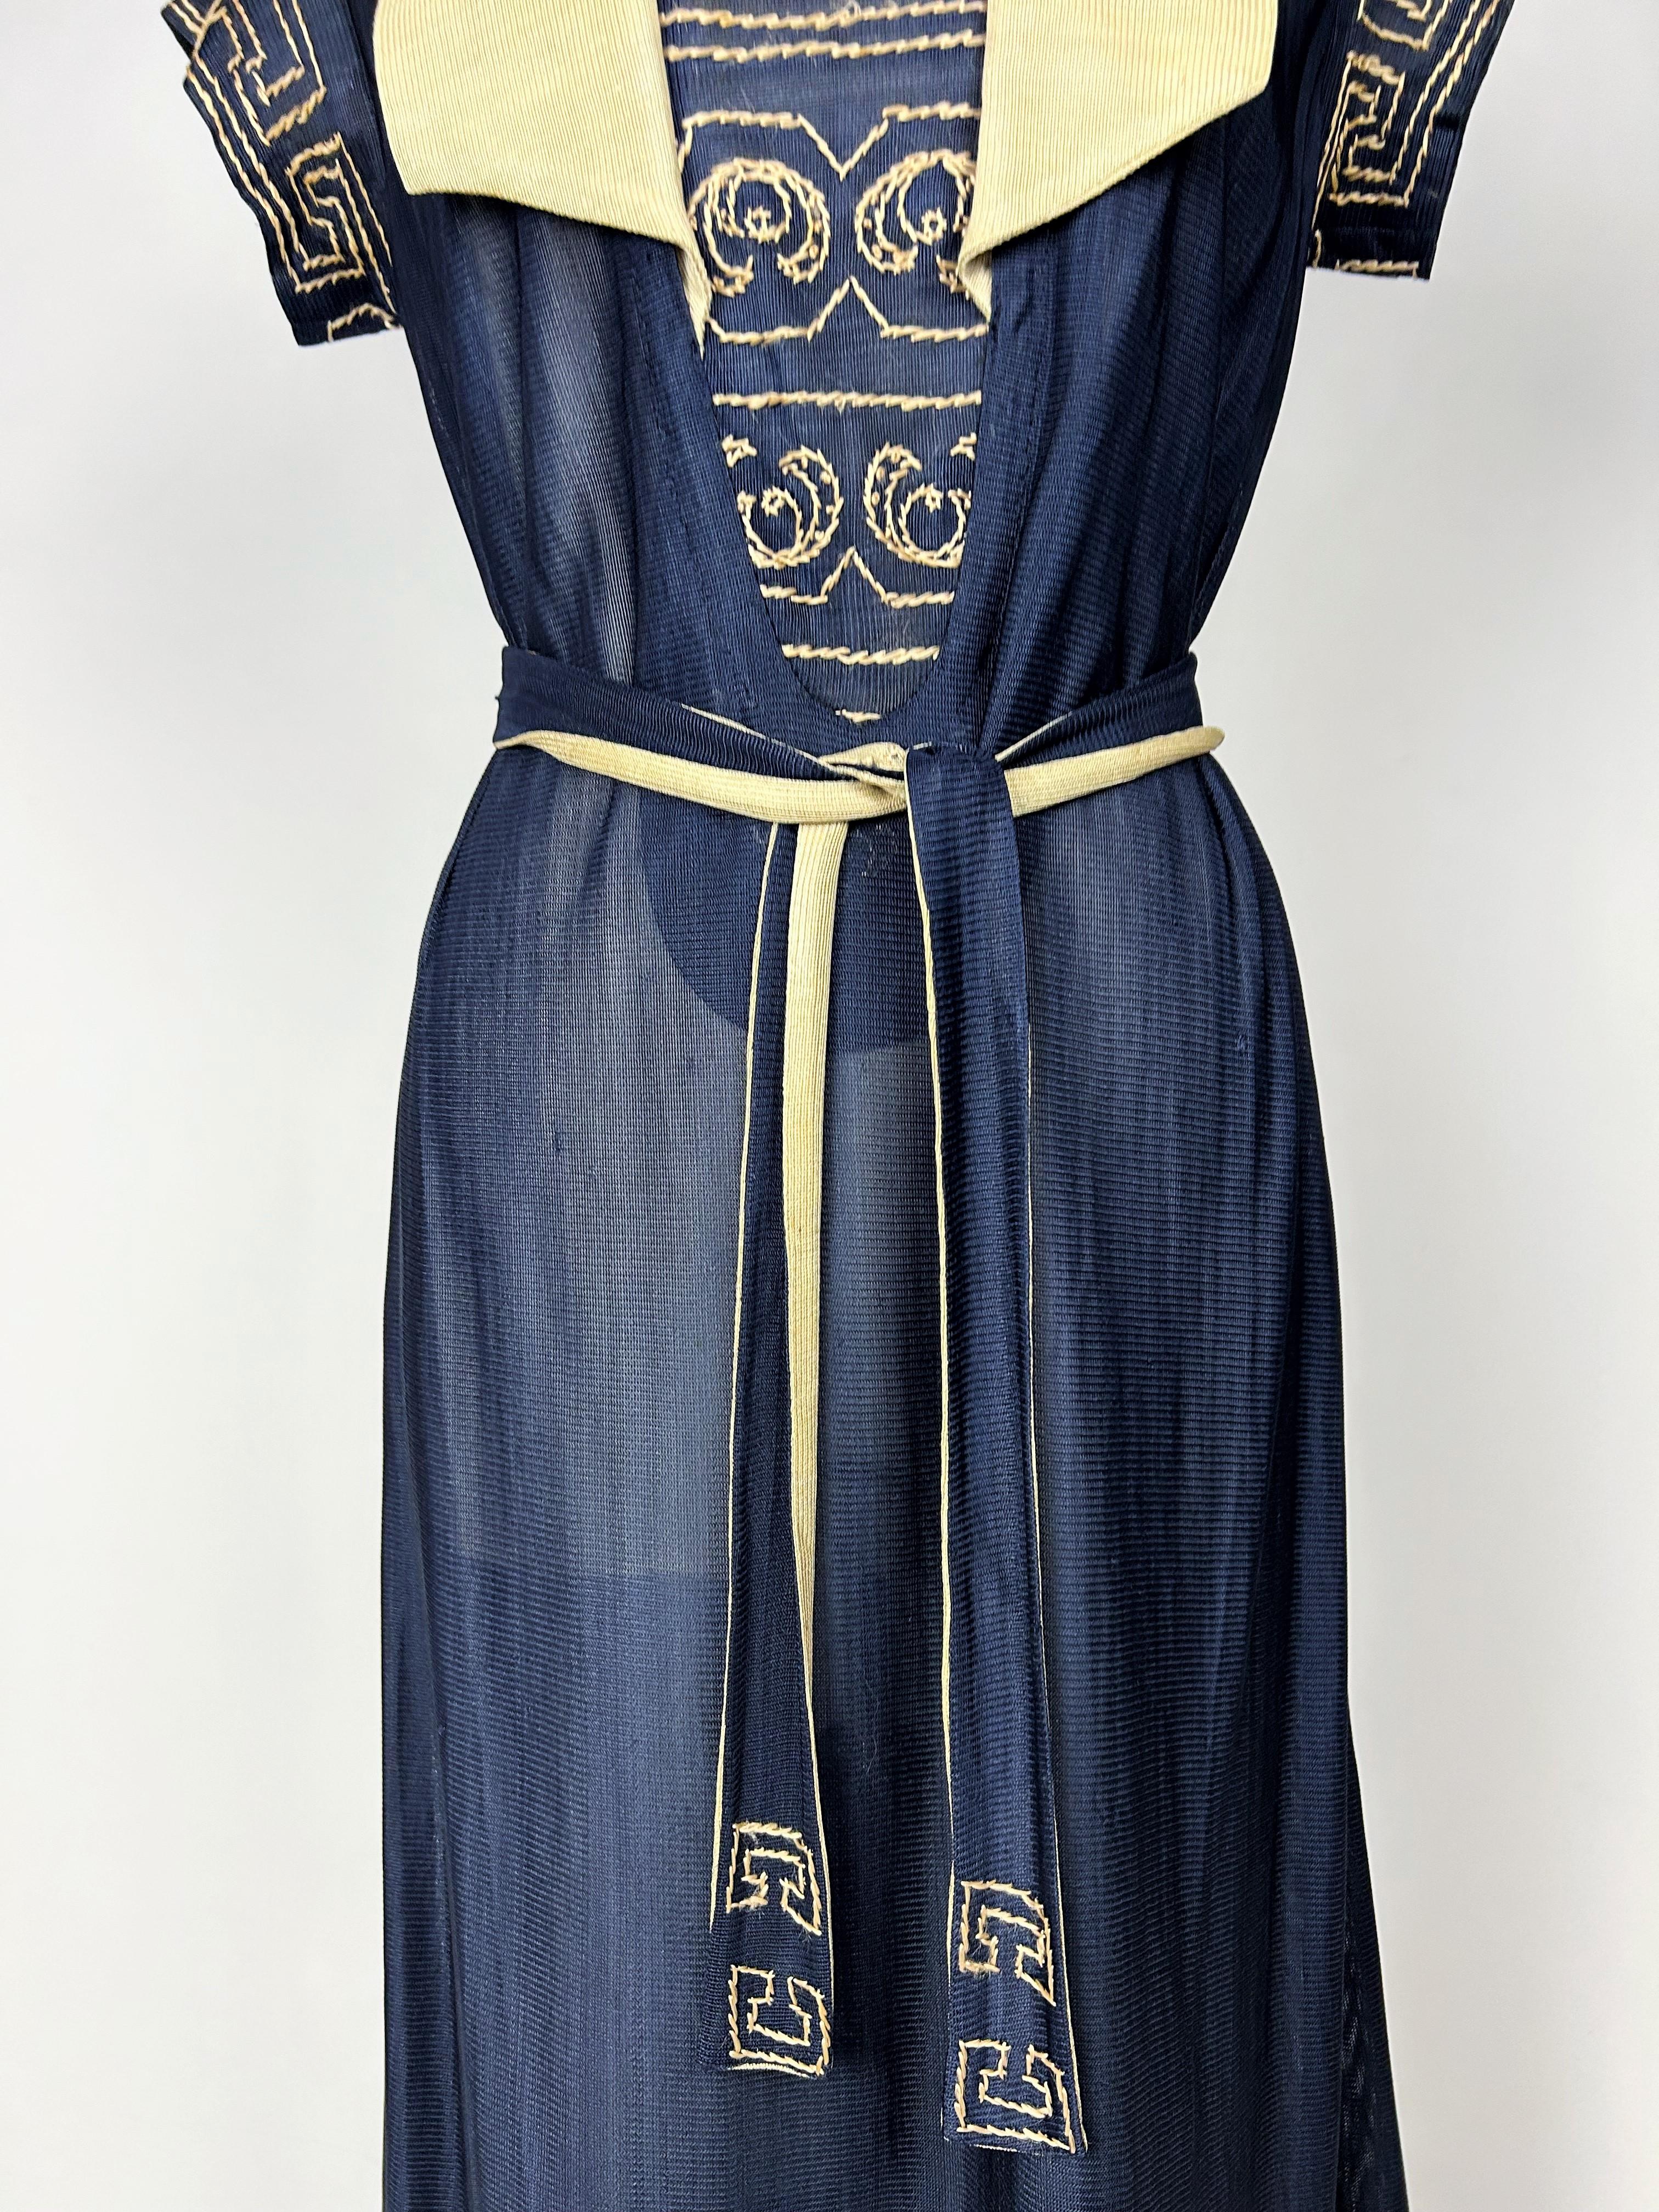 Vers 1918-1922

France

Etonnante robe Marinière en maille jersey de soie bicolore avec broderie CC dans le style de Coco Chanel qui inventa en 1917 ce type de robe de bord de mer avec la Maison Rodier. Un travail de haute couture dans l'assemblage